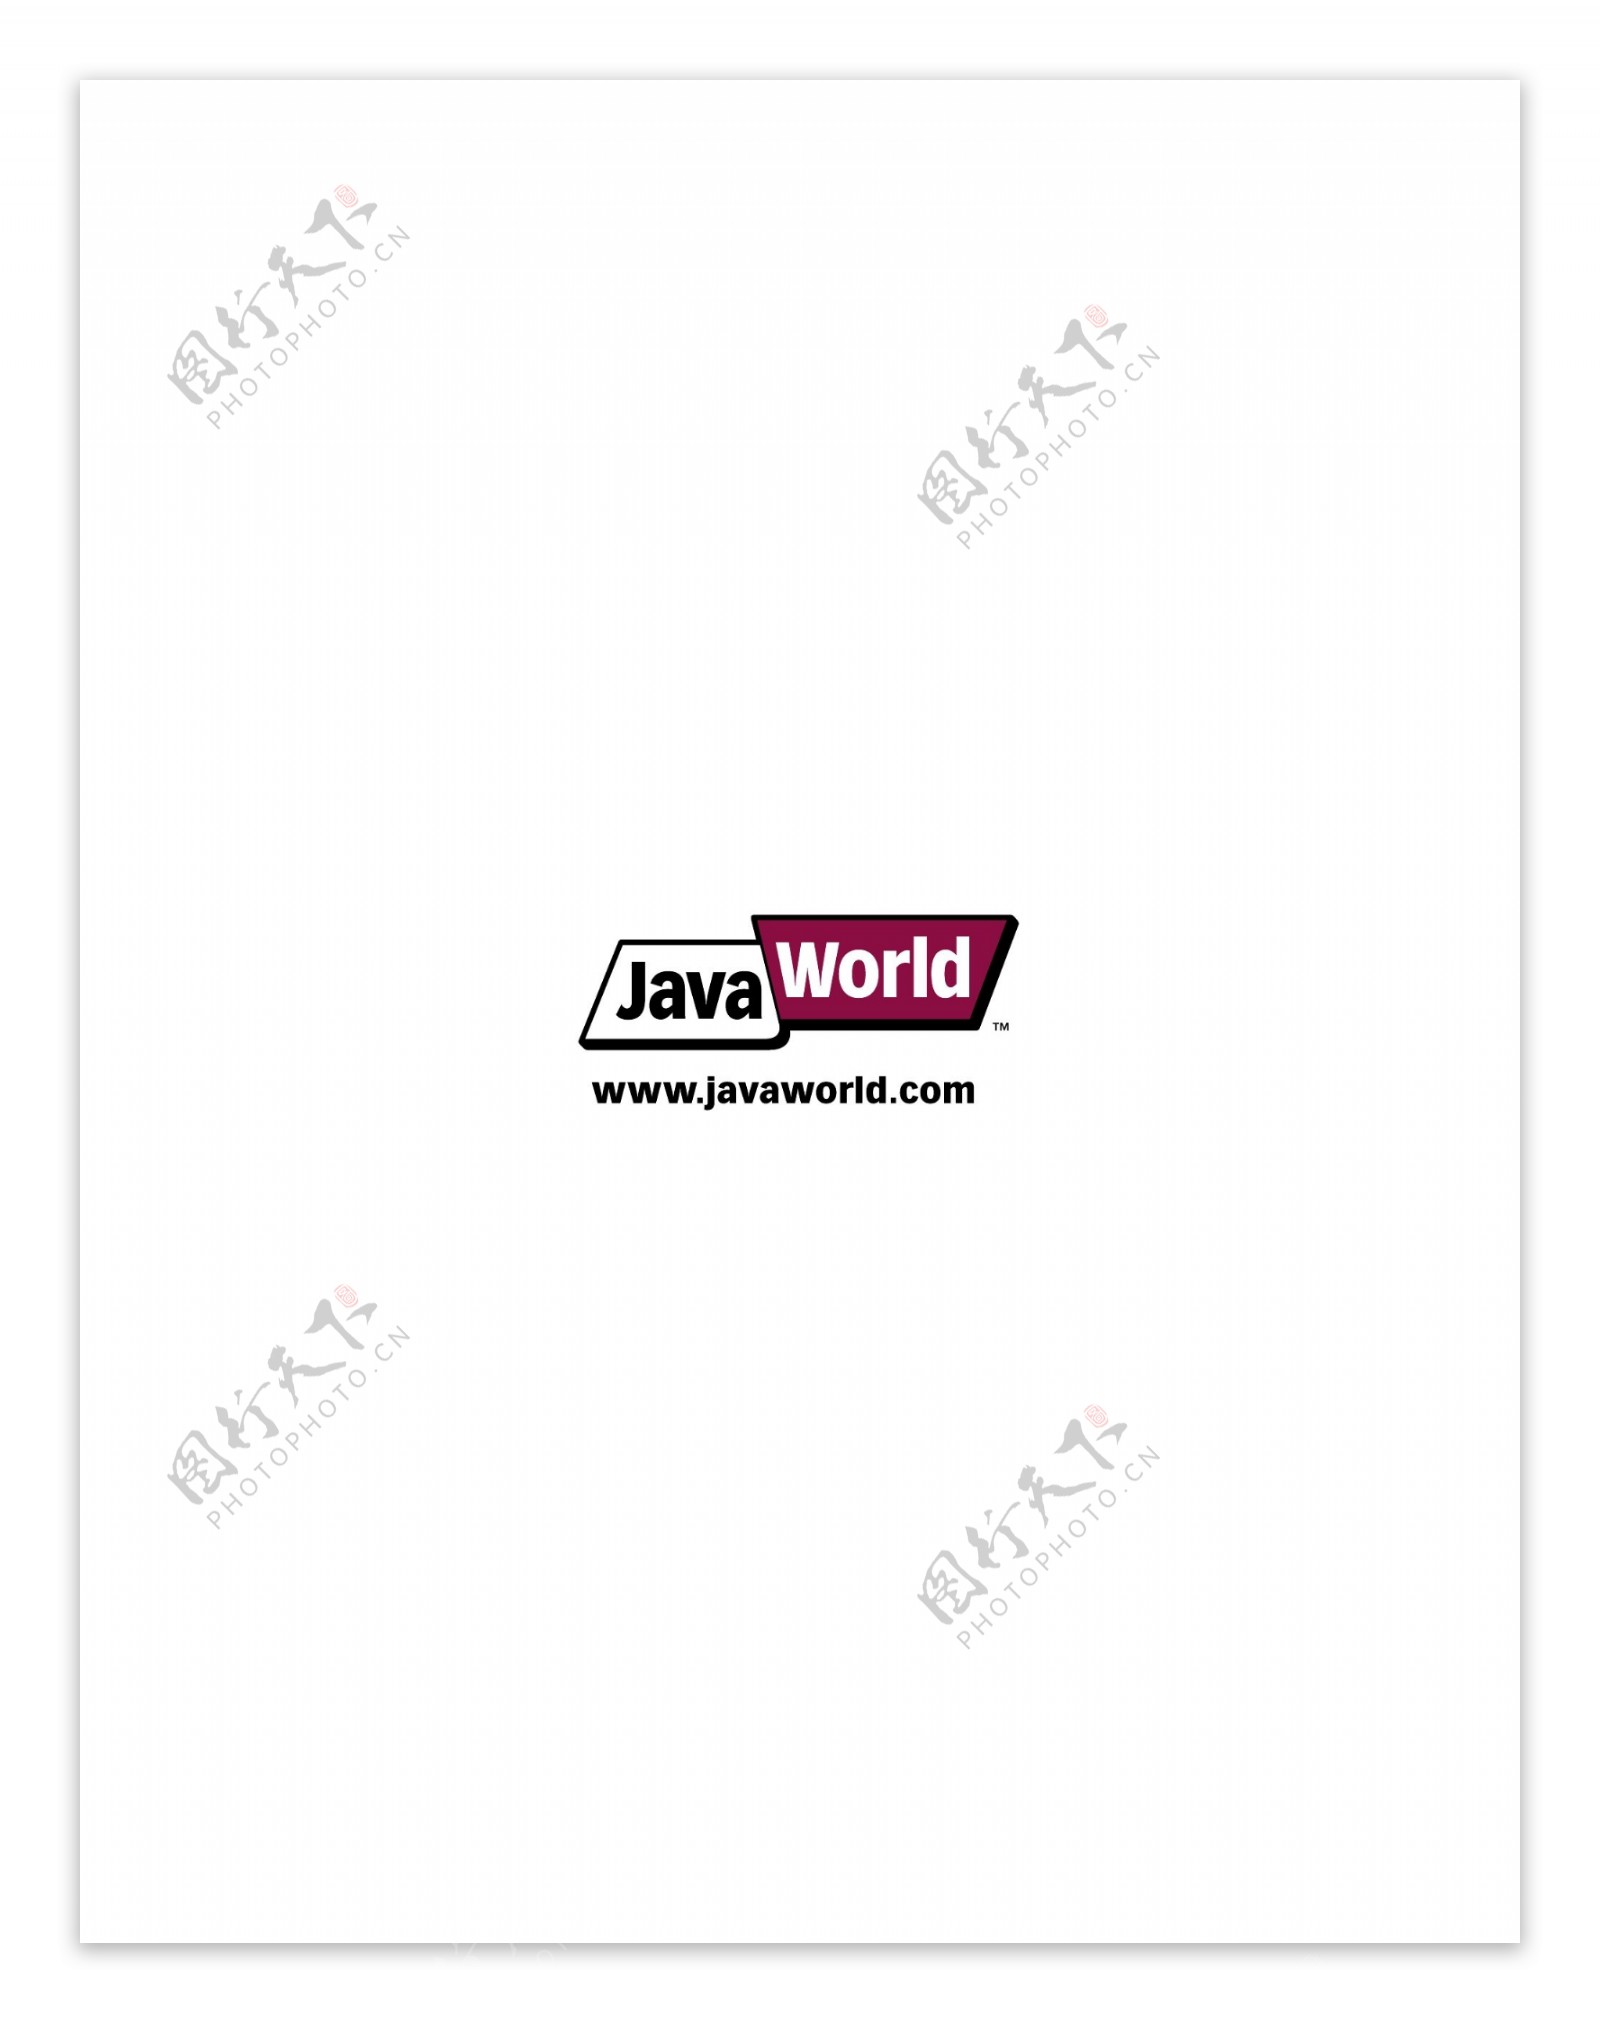 JavaWorldlogo设计欣赏国外知名公司标志范例JavaWorld下载标志设计欣赏